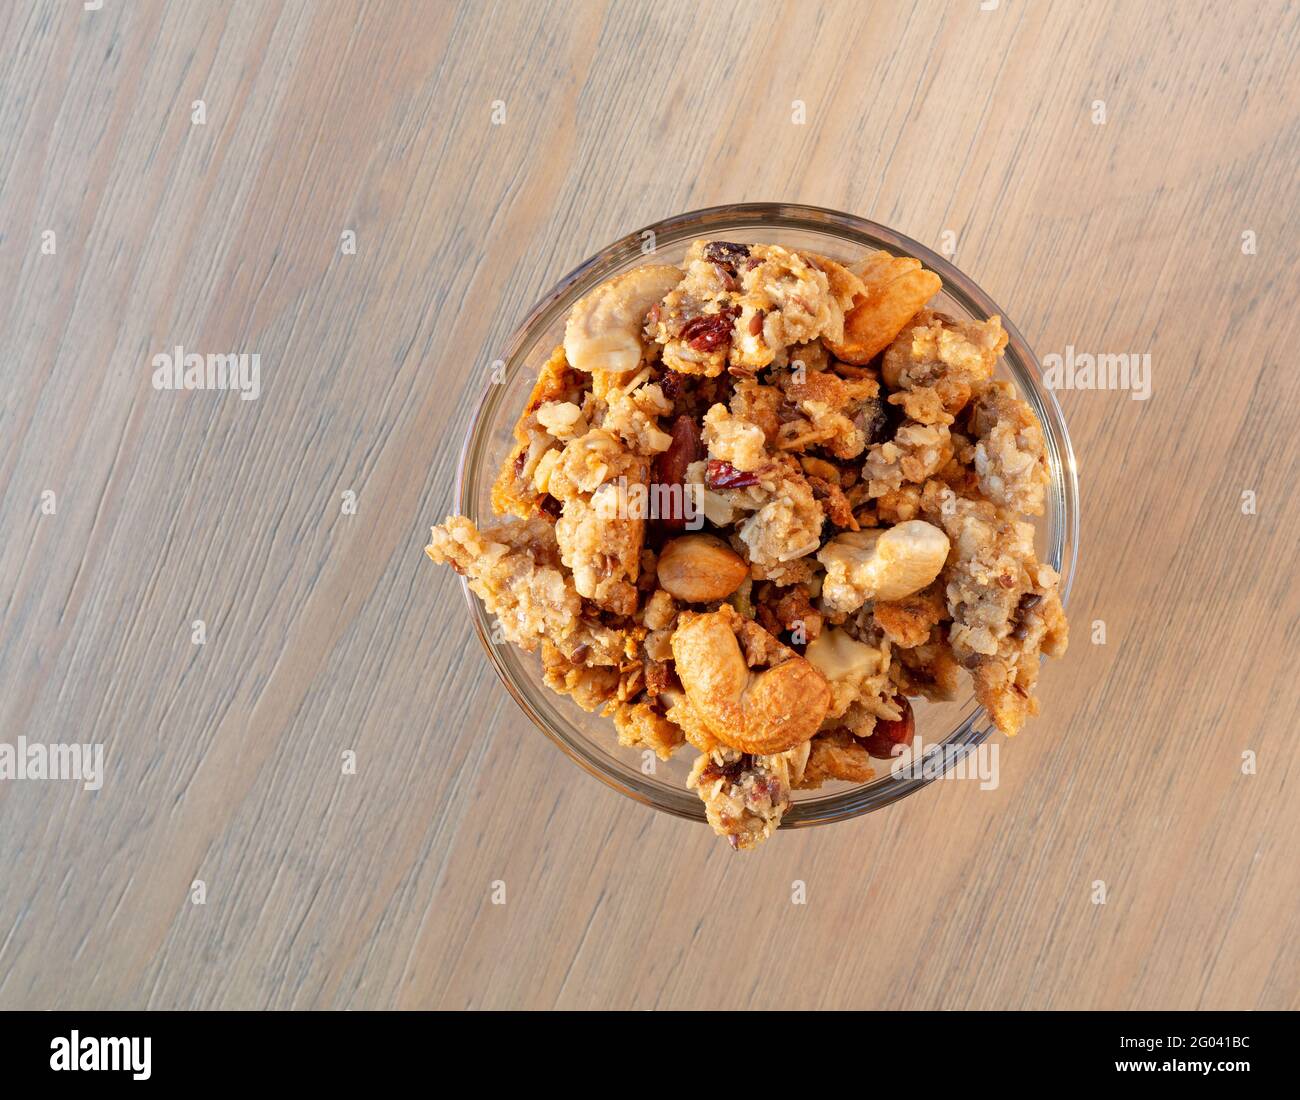 Vue de dessus d'un petit bol en verre rempli de céréales complètes granola avec fruits et noix sur une table. Banque D'Images